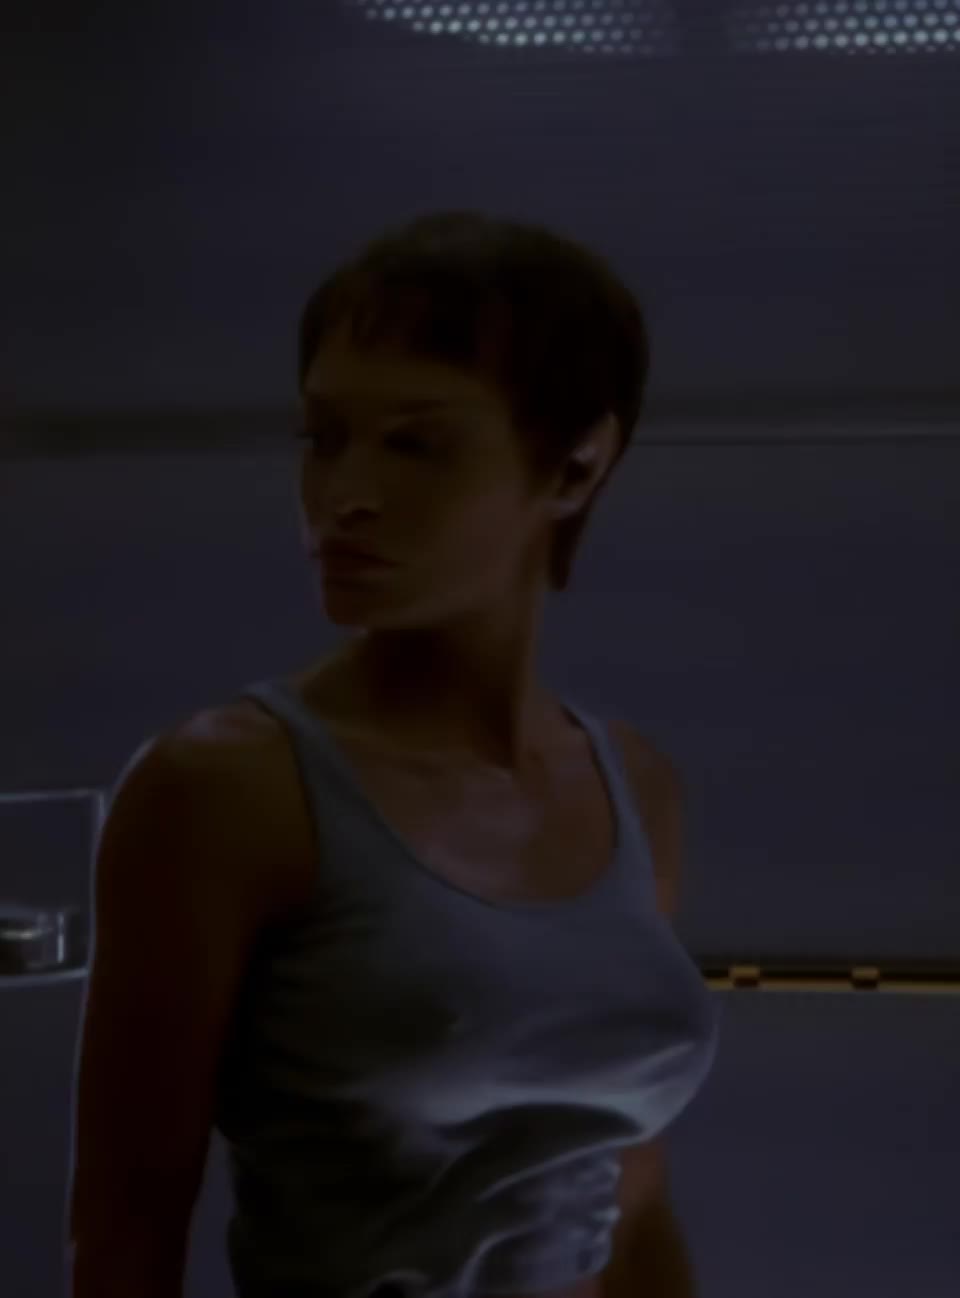 Jolene Blalock - Star Trek Enterprise (2003)